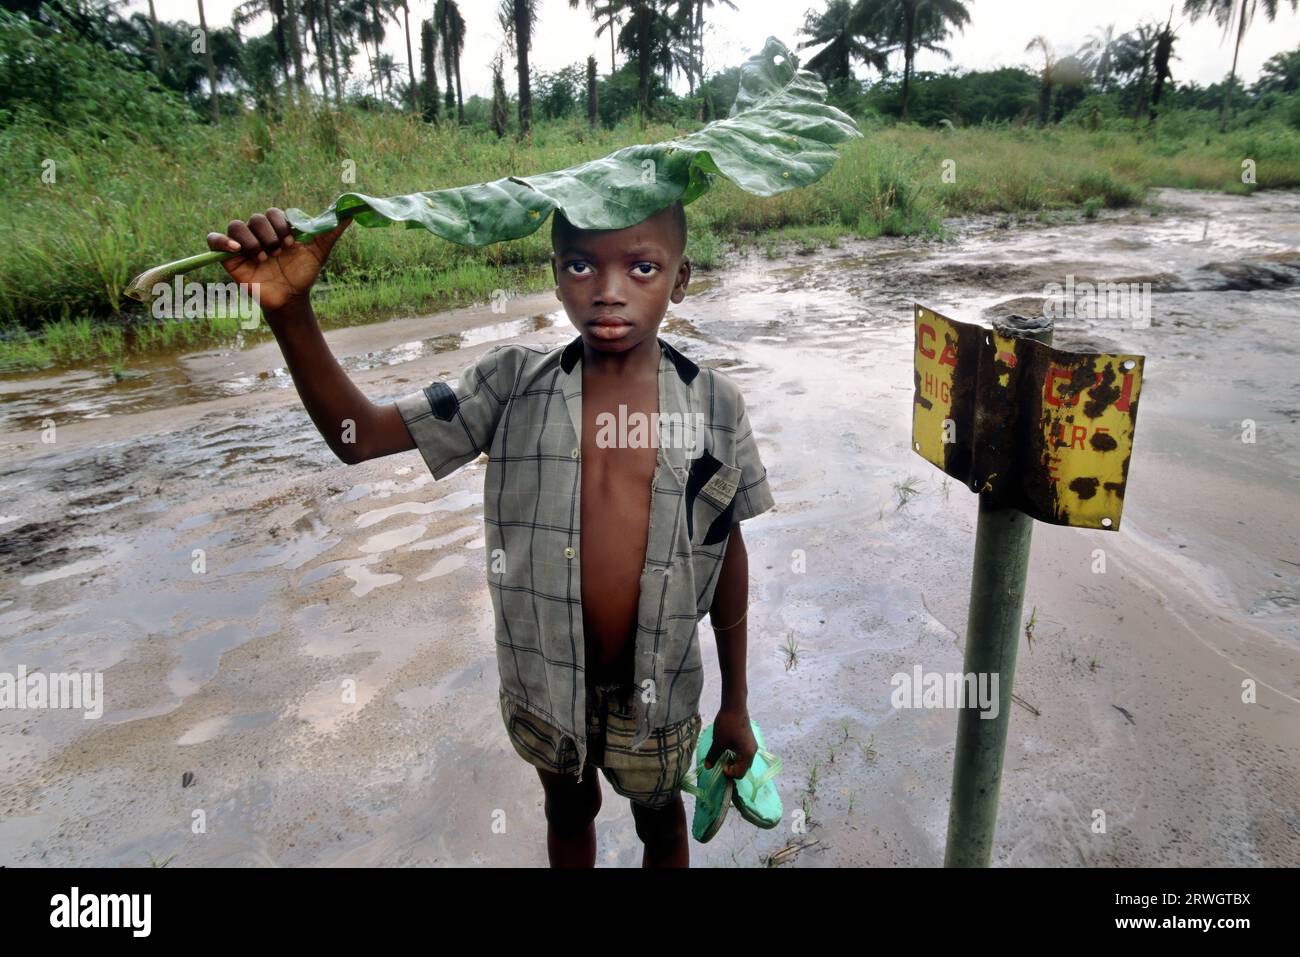 Nigeria: Un ragazzo si trova oltre a un segnale di pericolo da parte di una zona contaminata da petrolio a Ogoniland. Distruzione ambientale causata dalla fuoriuscita di petrolio greggio nella zona di produzione petrolifera del sud del paese, prevalentemente abitata dalla tribù Ogoni. Foto Stock